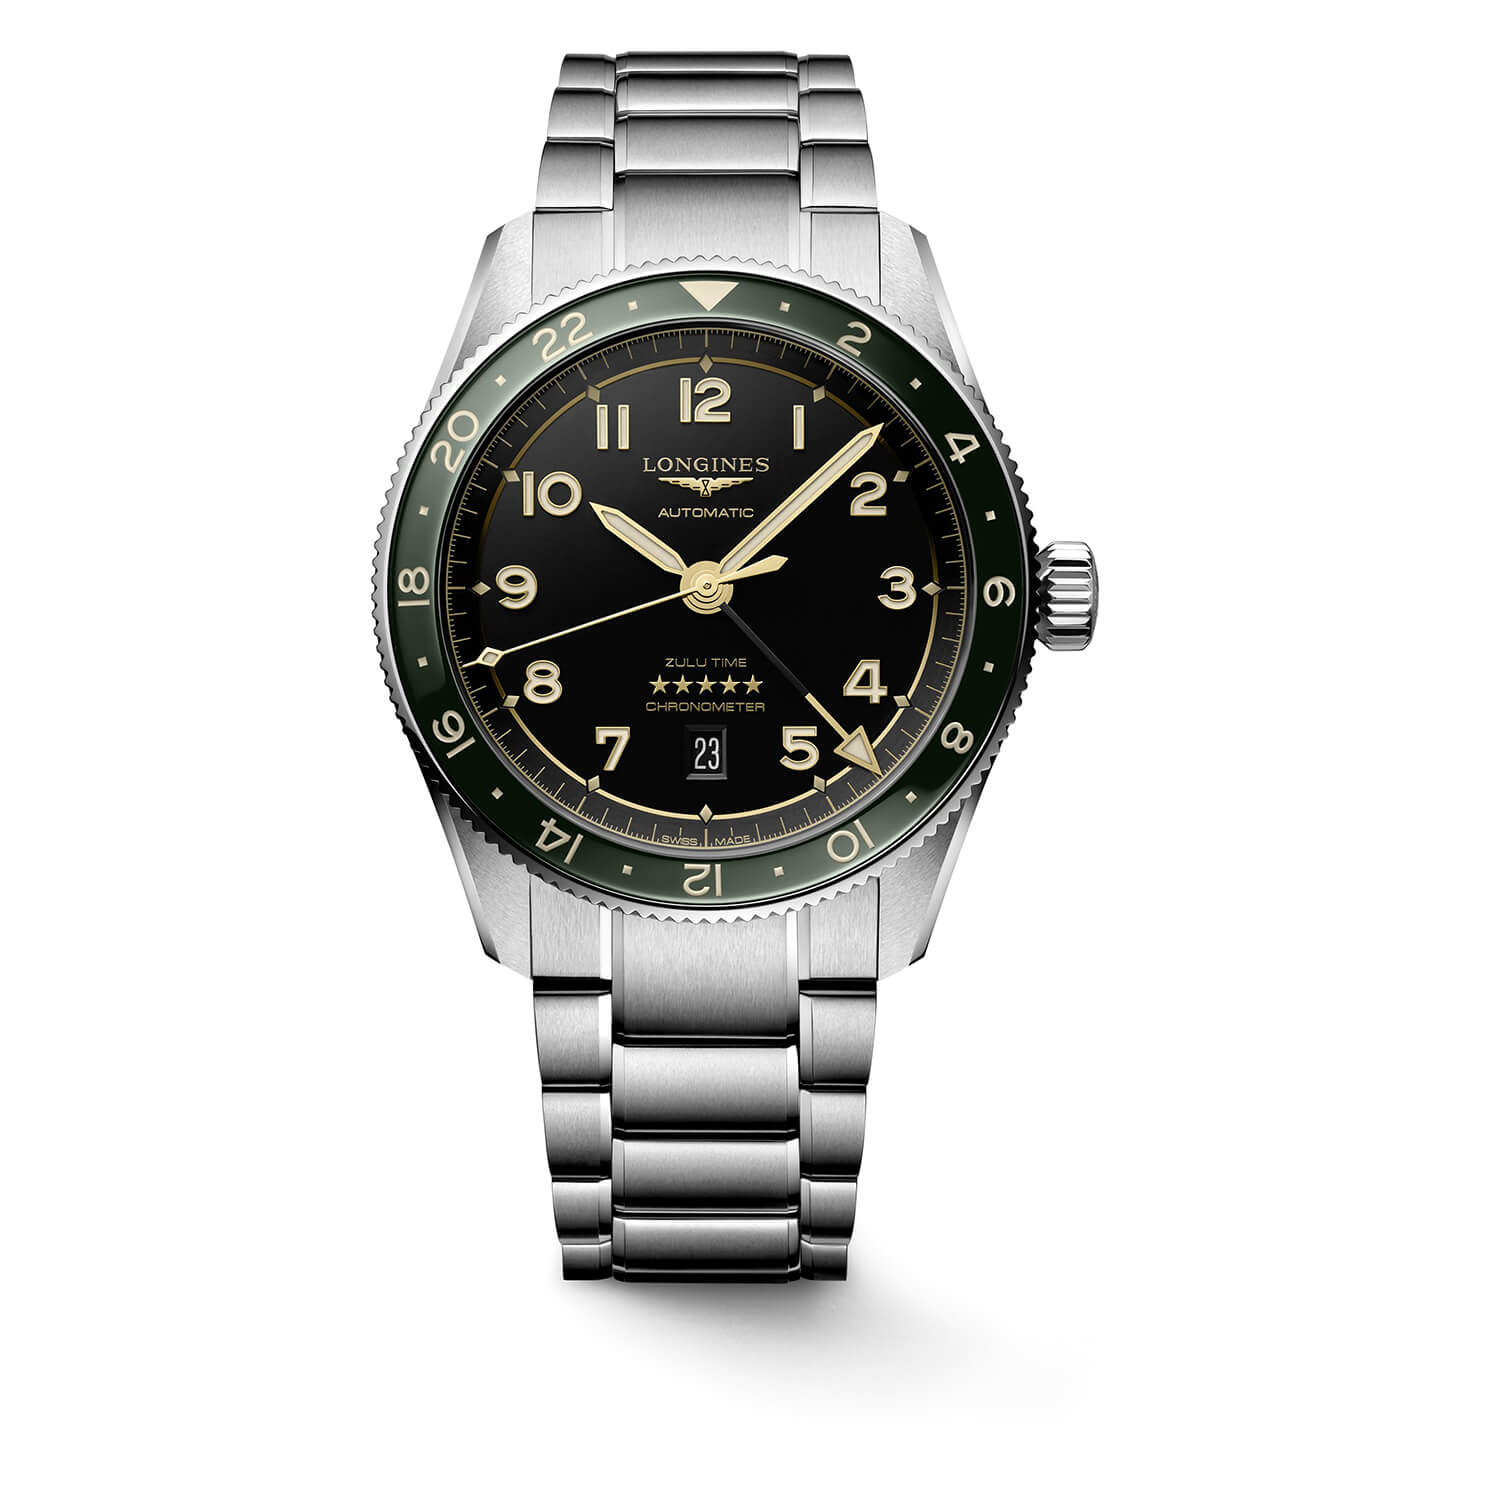 Photos - Wrist Watch Longines Avigation Spirit Zulu 42mm Automatic Black Dial Green Bezel Steel 